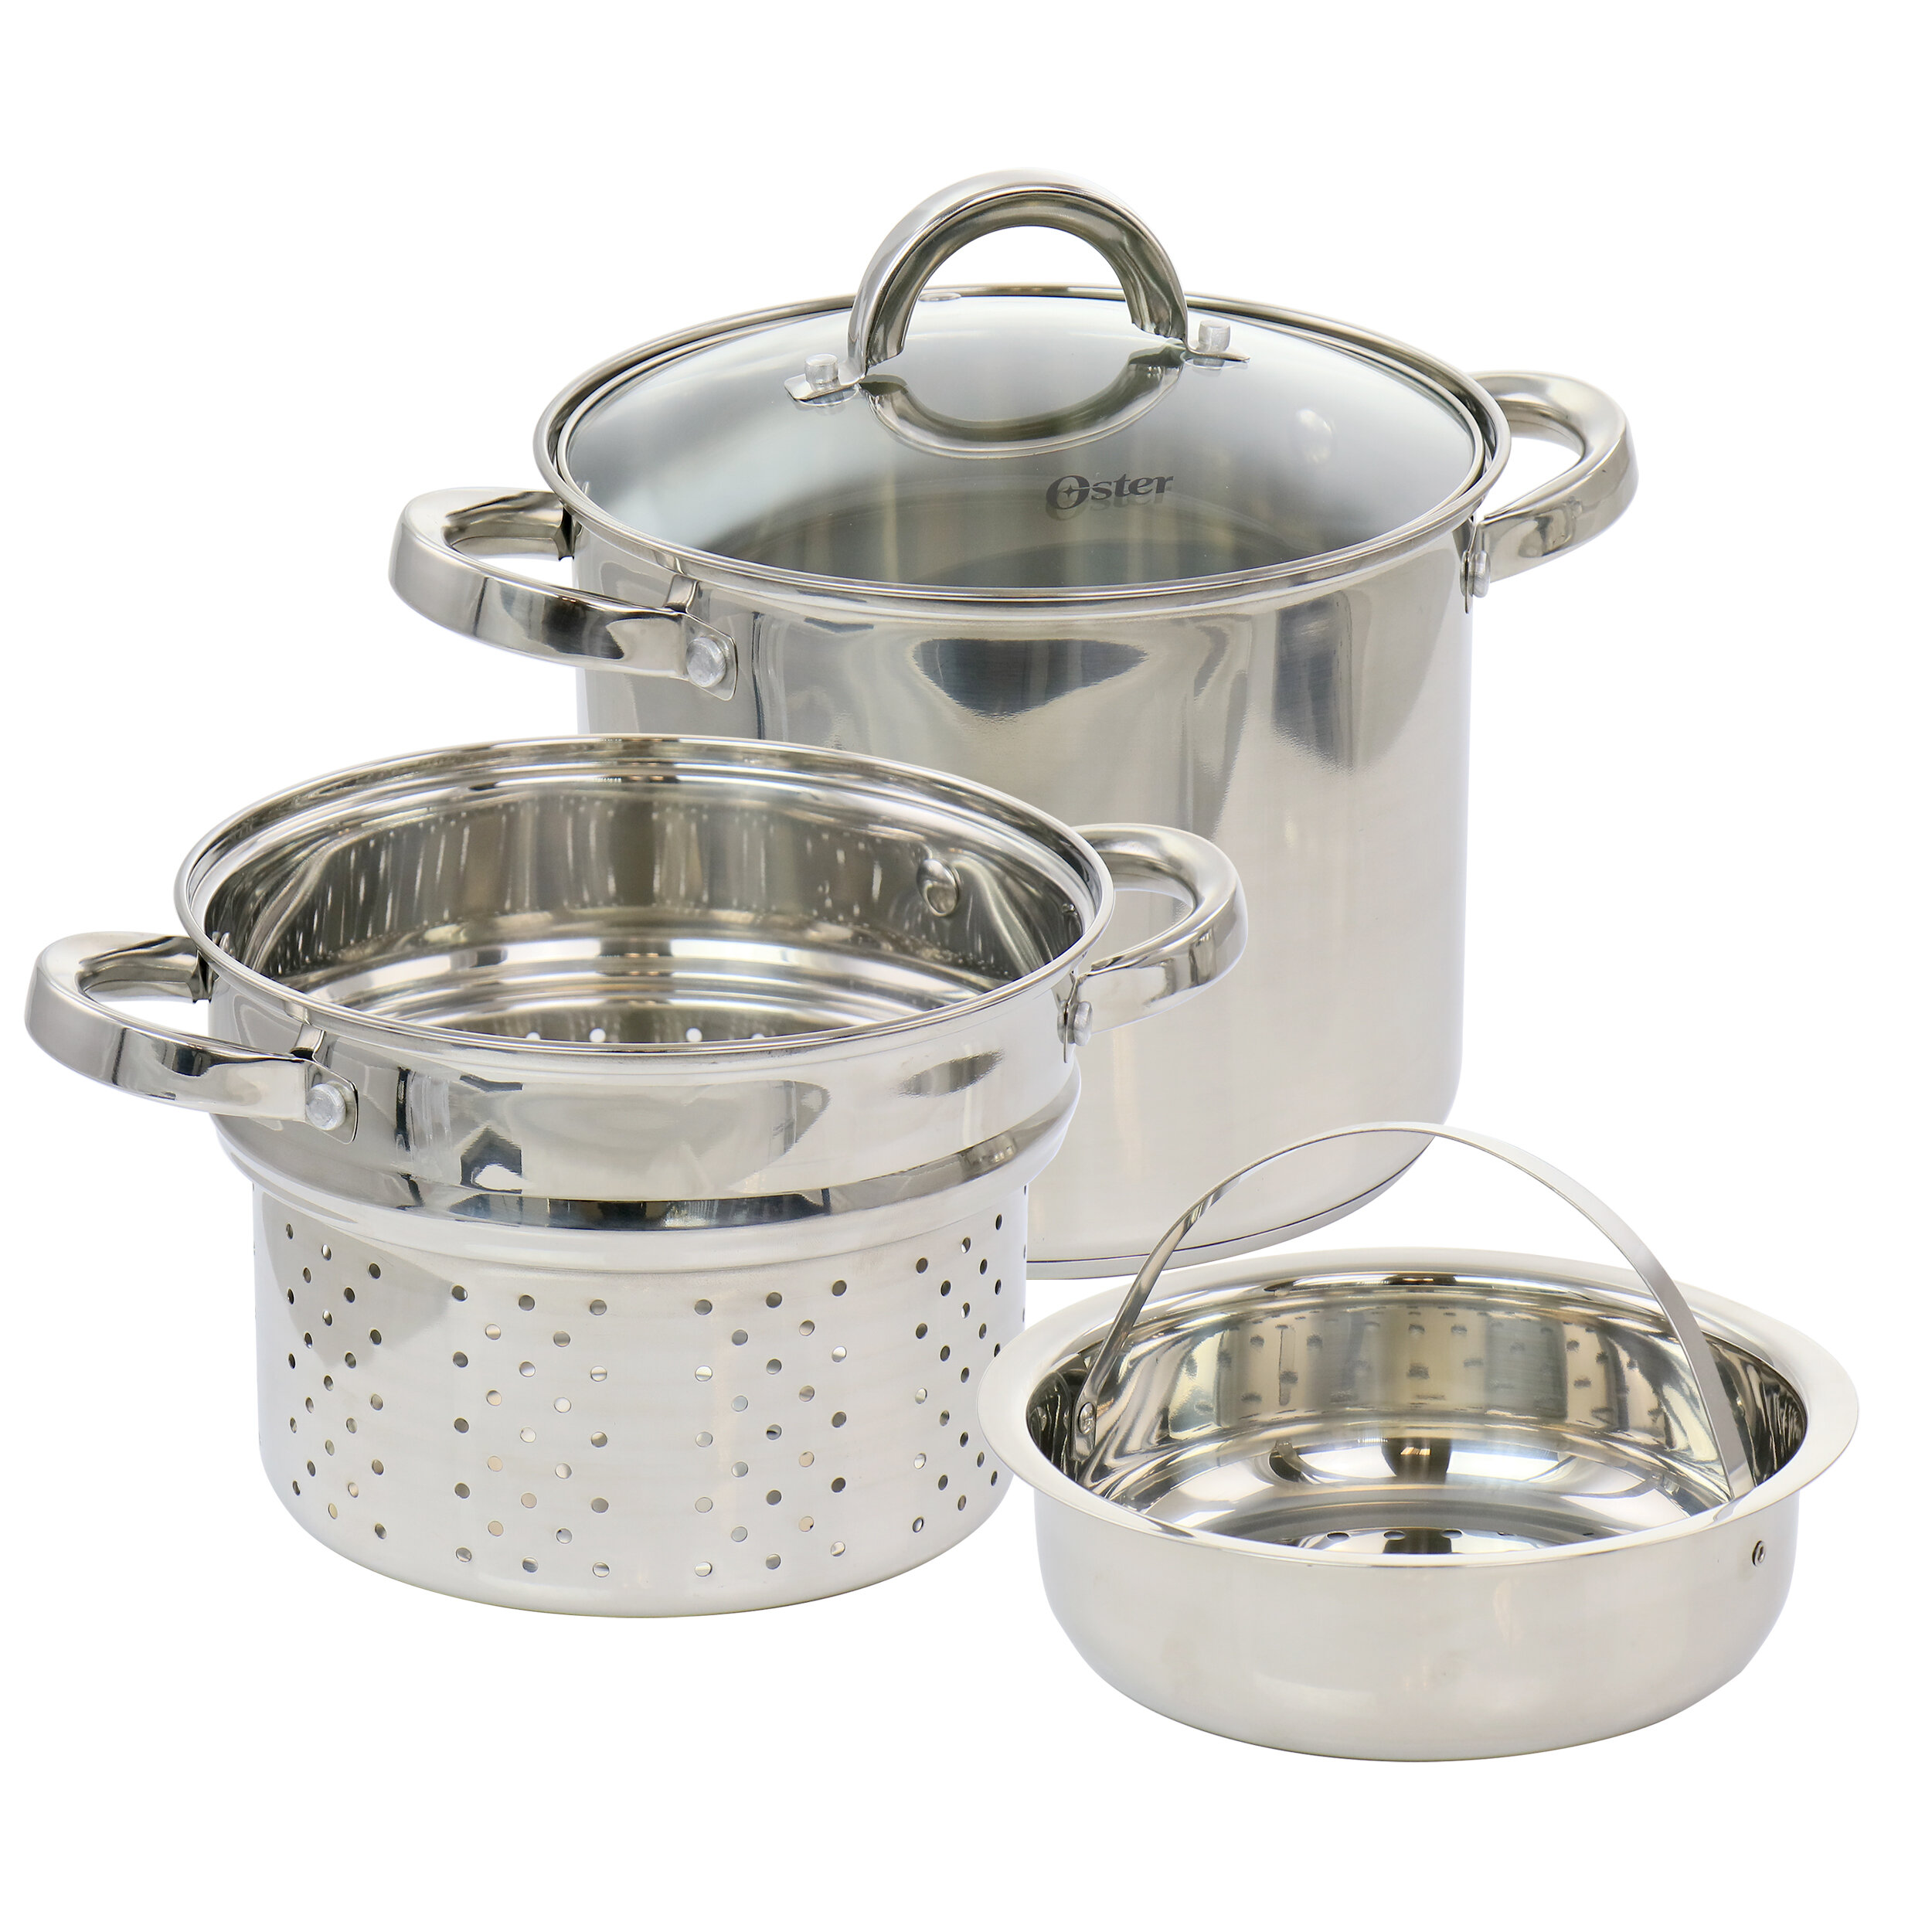 https://assets.wfcdn.com/im/76518623/compr-r85/1426/142618030/oster-sangerfield-5-qt-stainless-steel-pot-set-with-lid.jpg